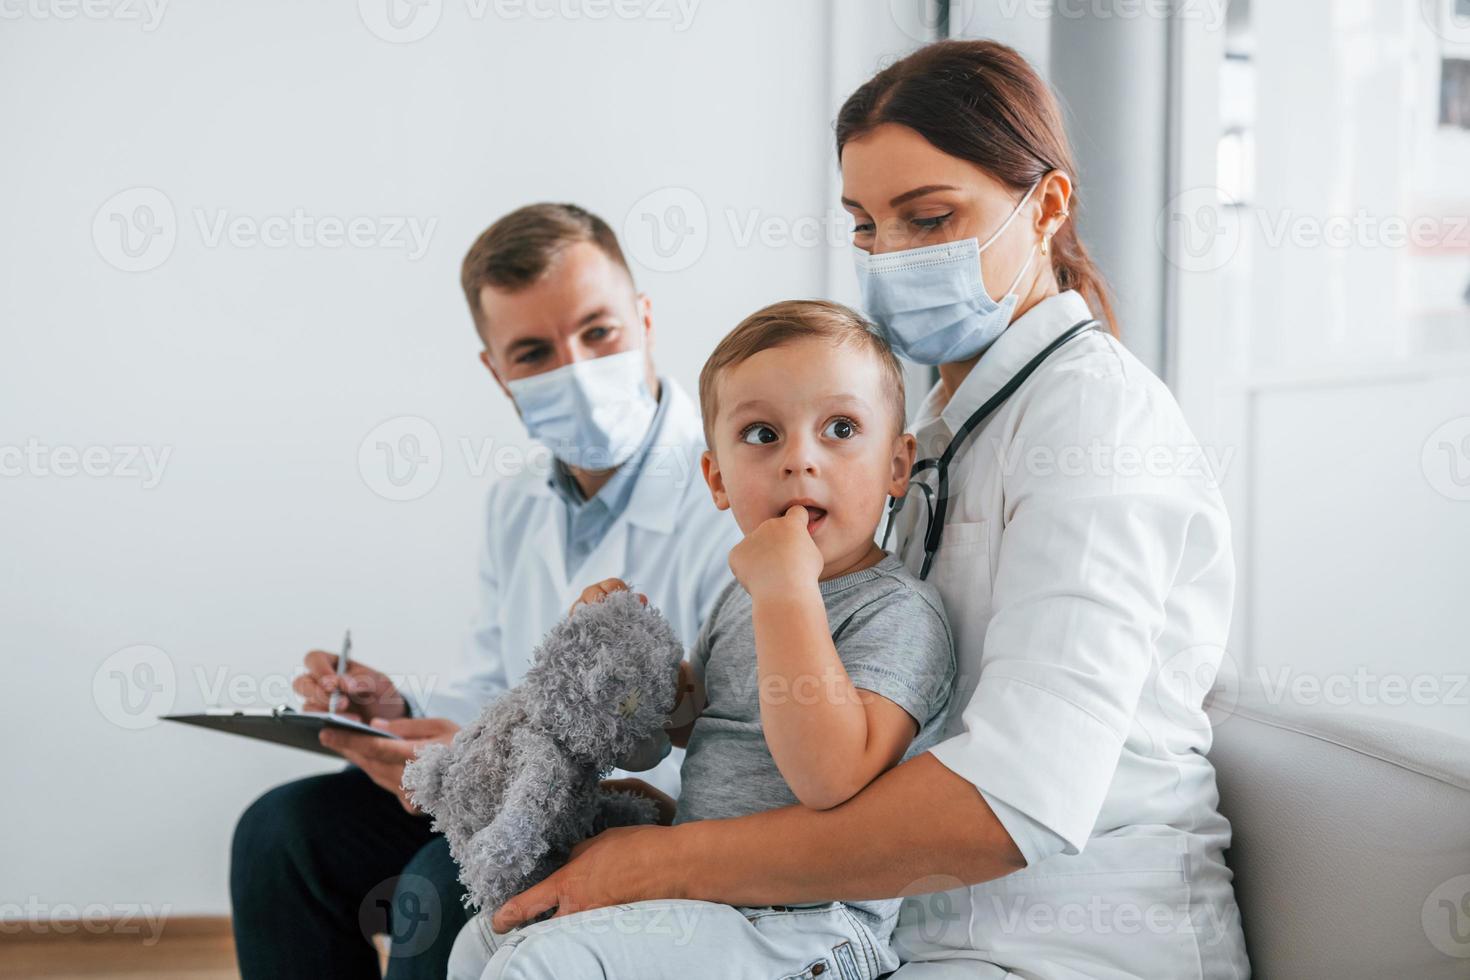 garotinho está na clínica. dois médicos de jaleco branco estão no hospital trabalhando juntos foto